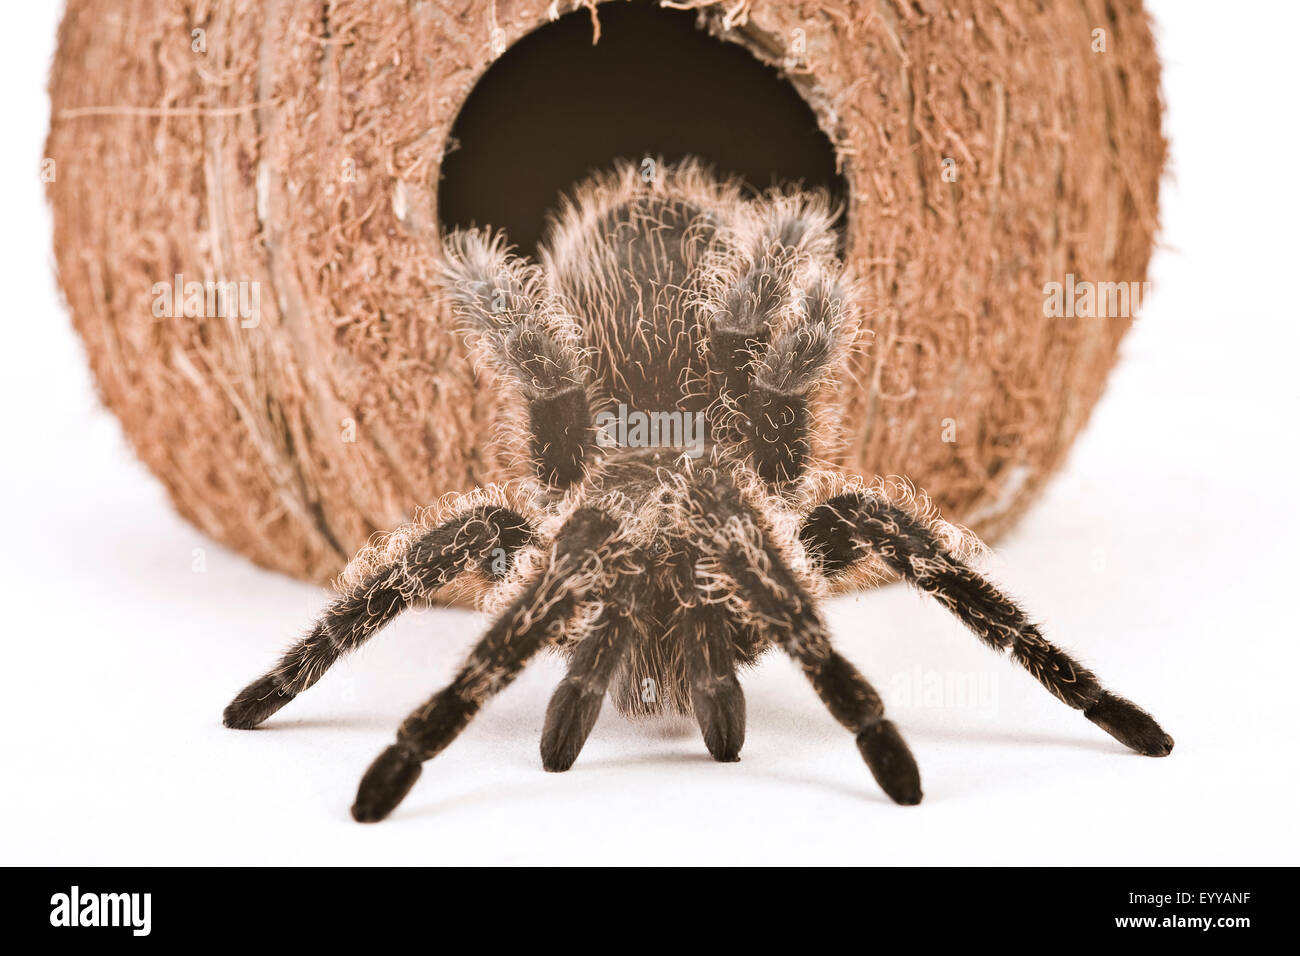 Araignée d'oiseaux (Theraphosidae), extrait d'une noix de coco, Autriche Banque D'Images